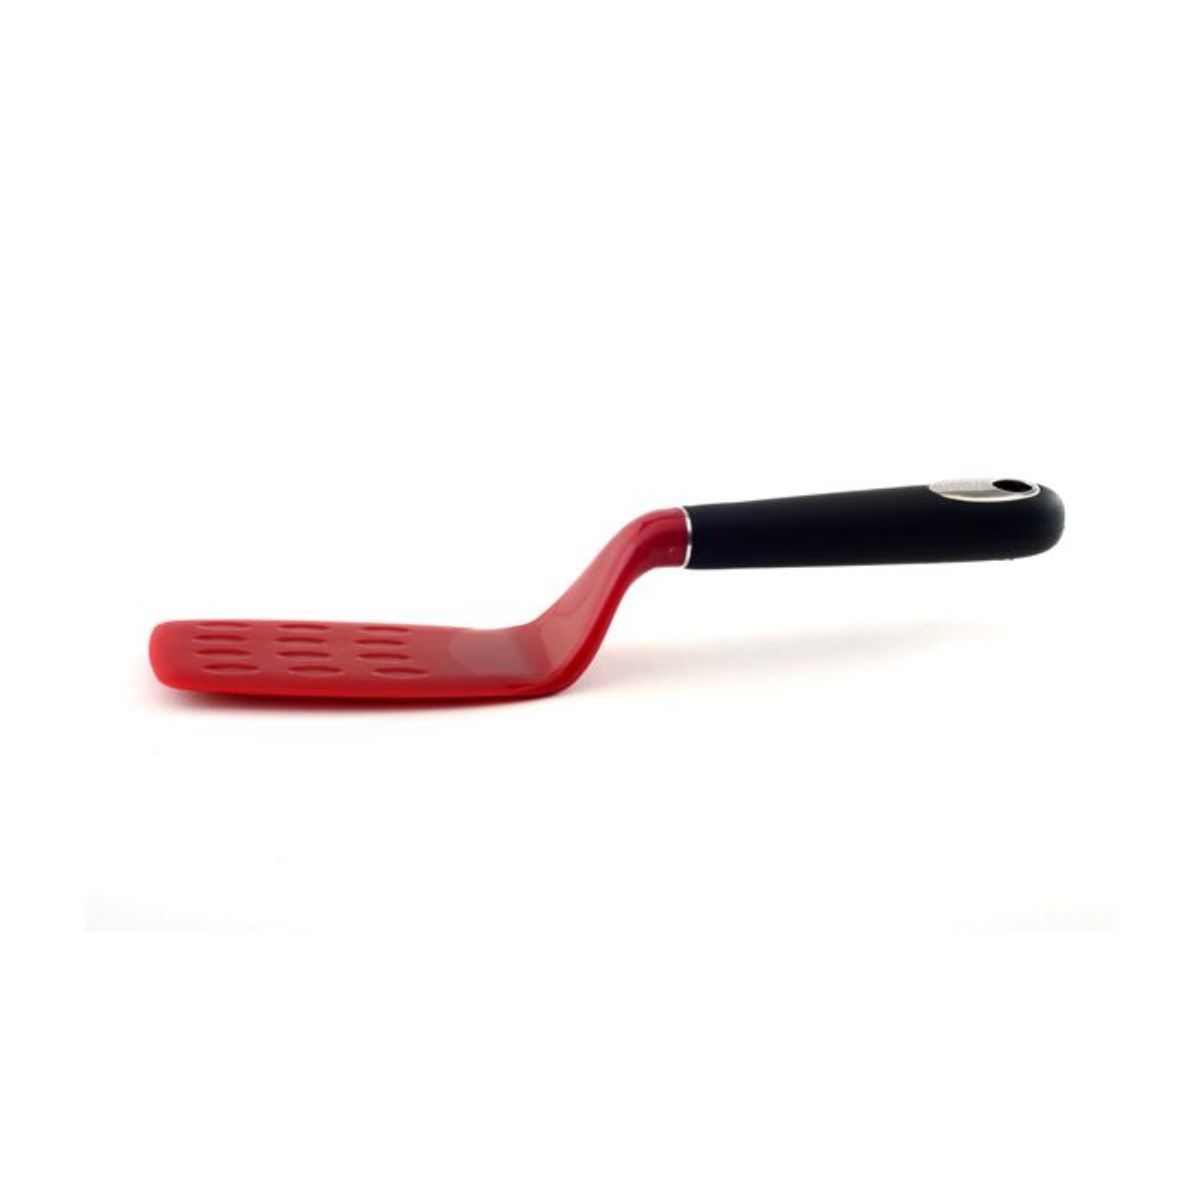 Norpro Grip-EZ Red Flexible Pancake Spatula